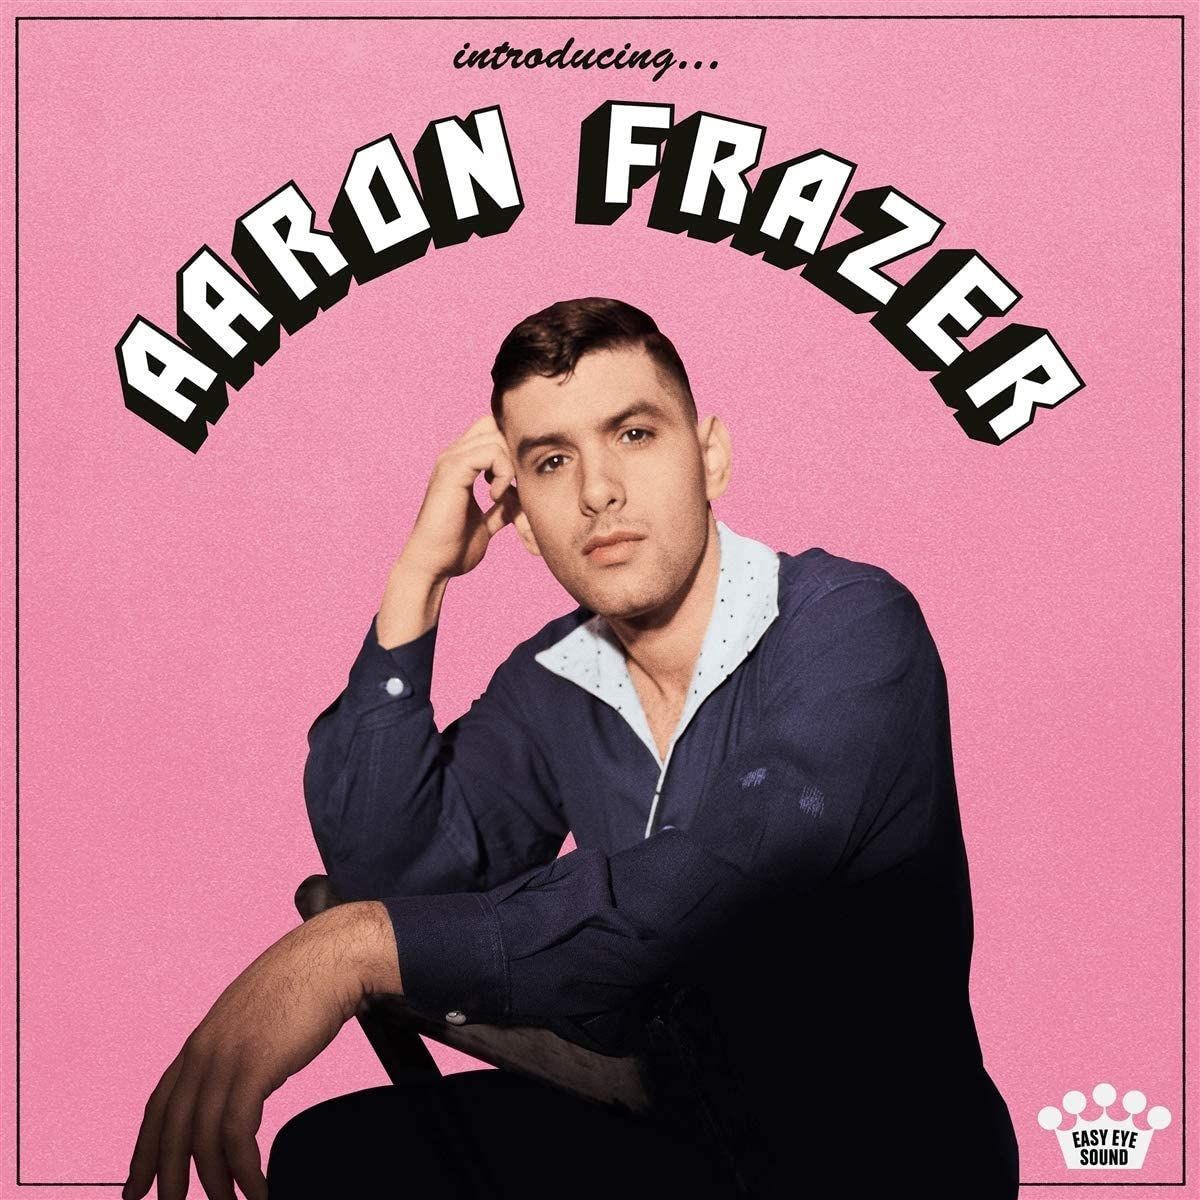 Aaron Frazer - Introducing…: CD